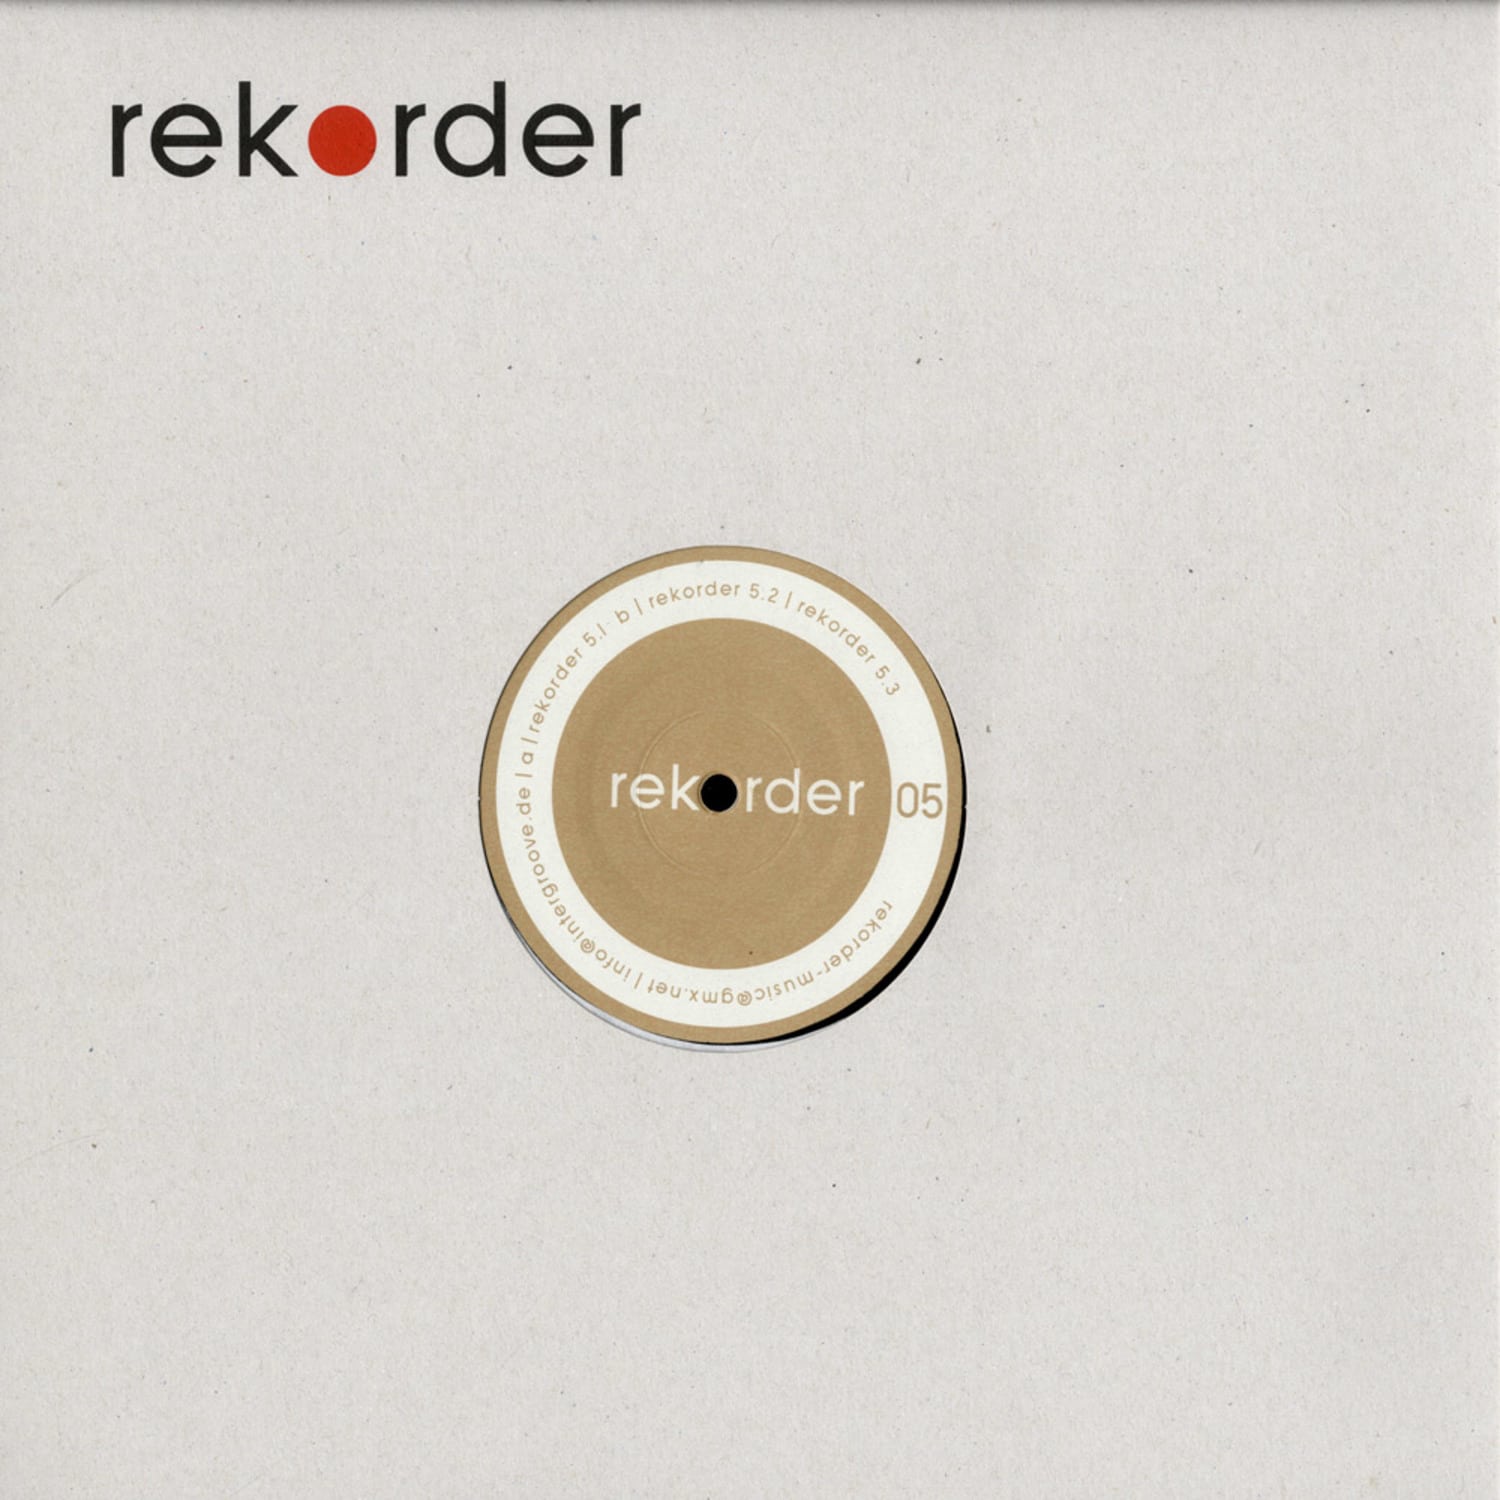 Rekorder - REKORDER 05